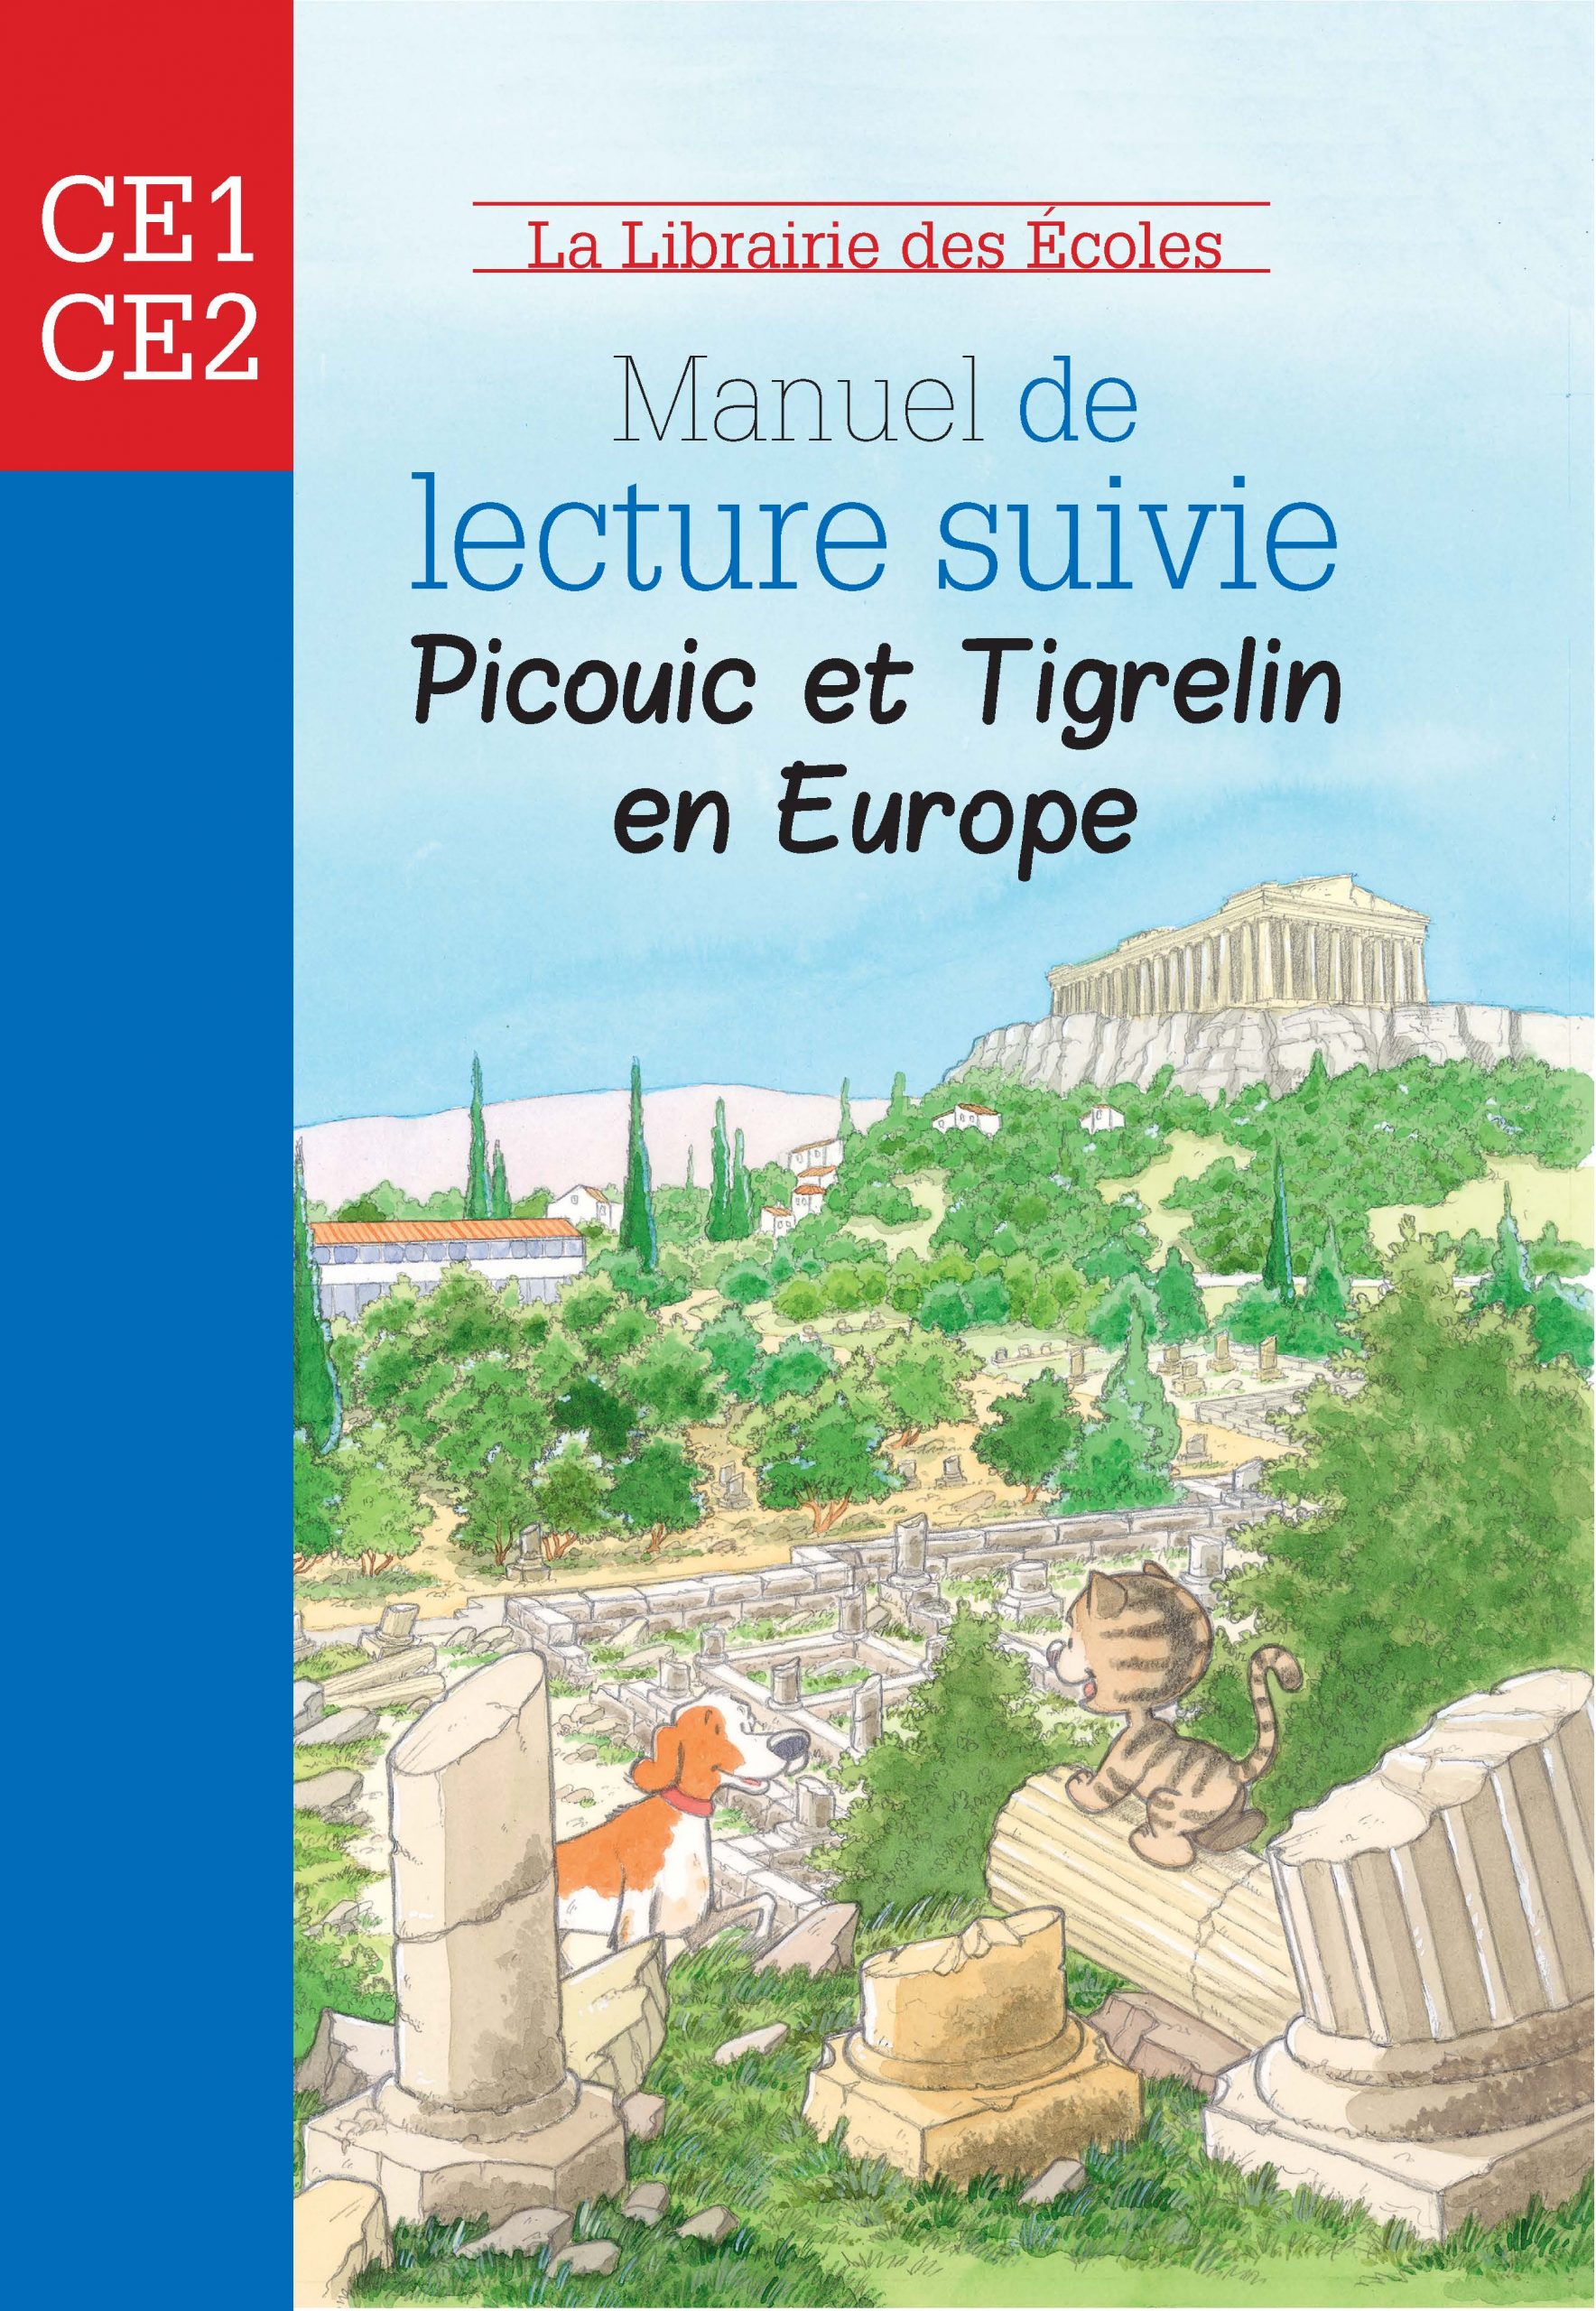 Picouic et Tigrelin en Europe Manuel de lecture suivie CE2